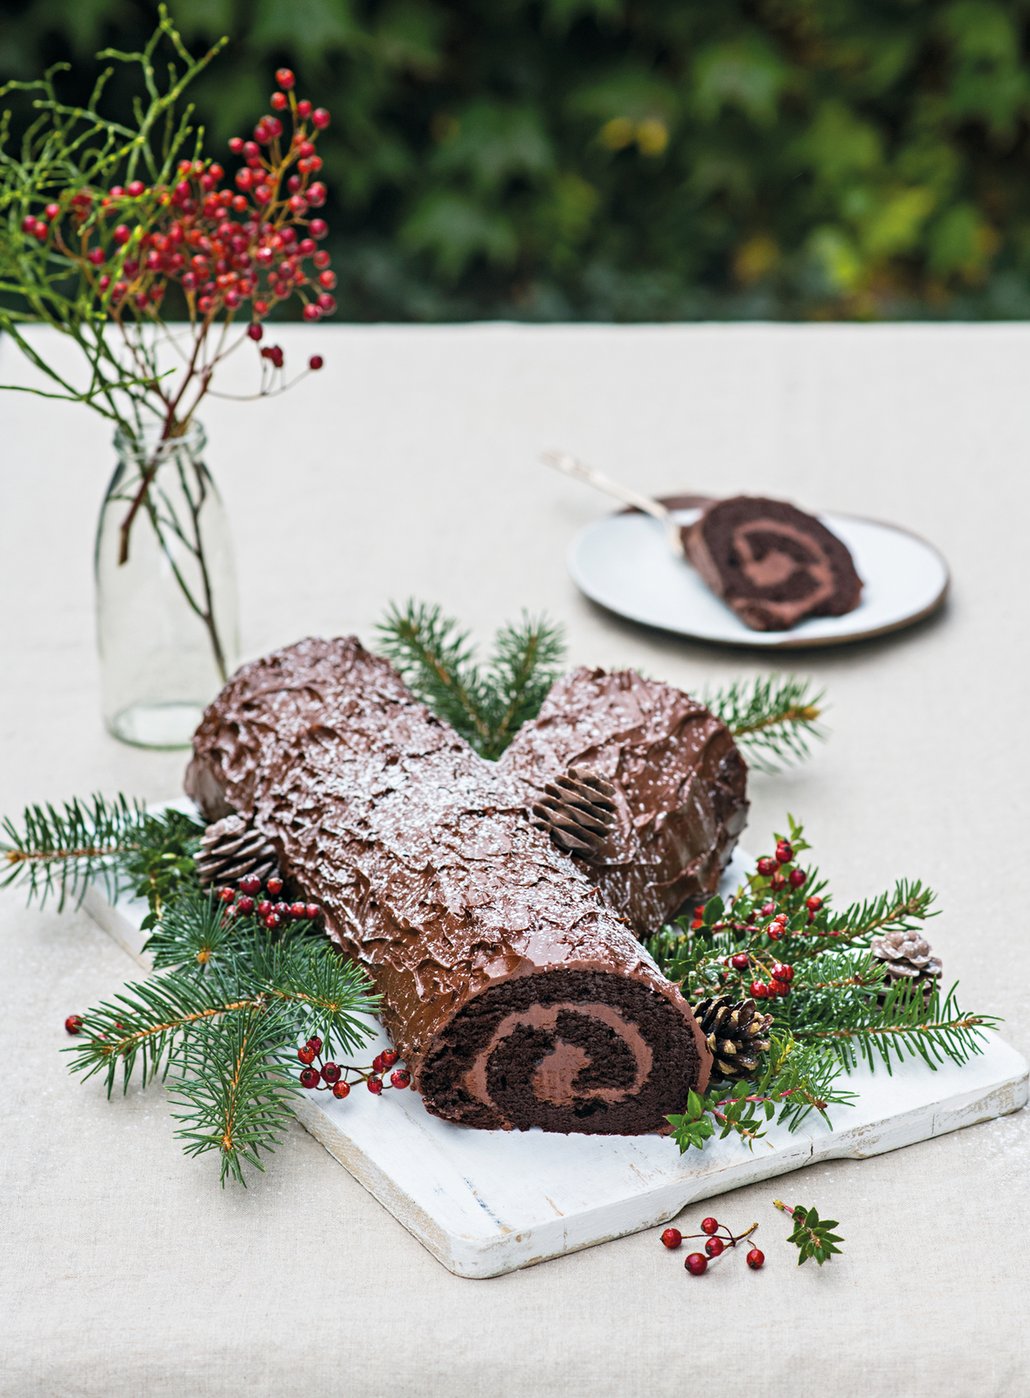 Vánoční speciál F.O.O.D. ukrývá také recept na tohle lahodné extra čokoládové vánoční poleno bez mouky